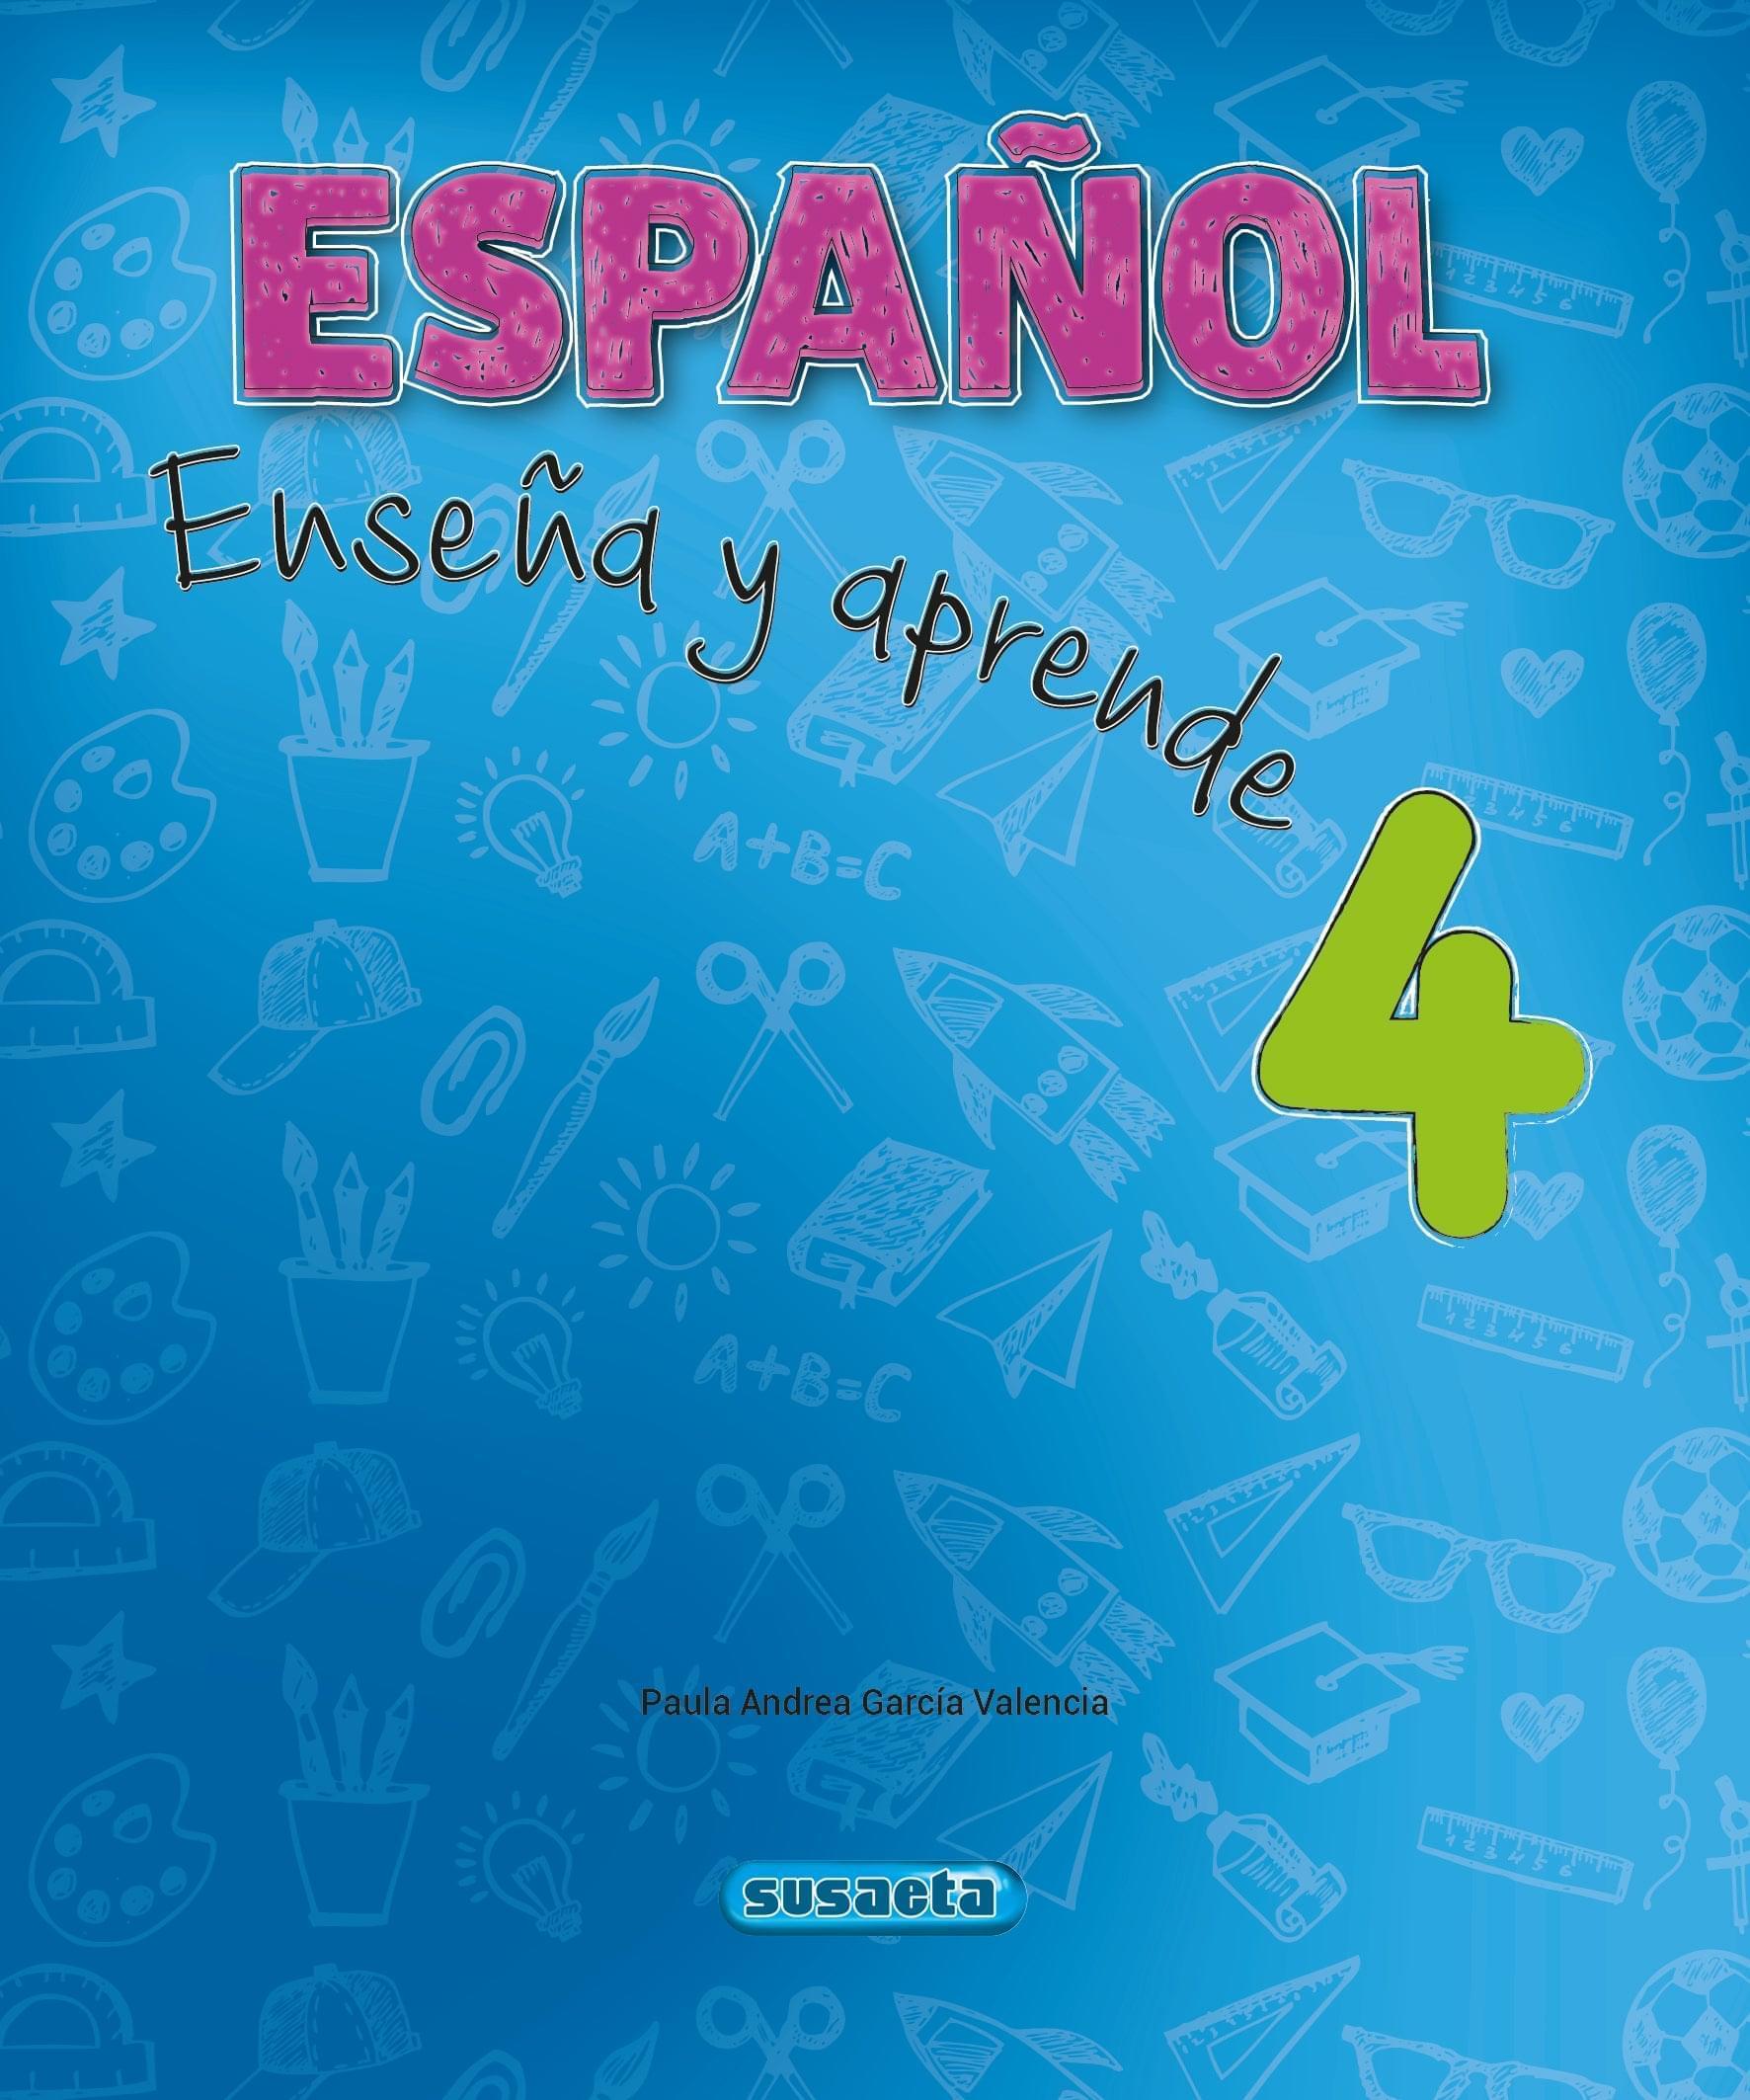 Español Aprende y Enseña 4